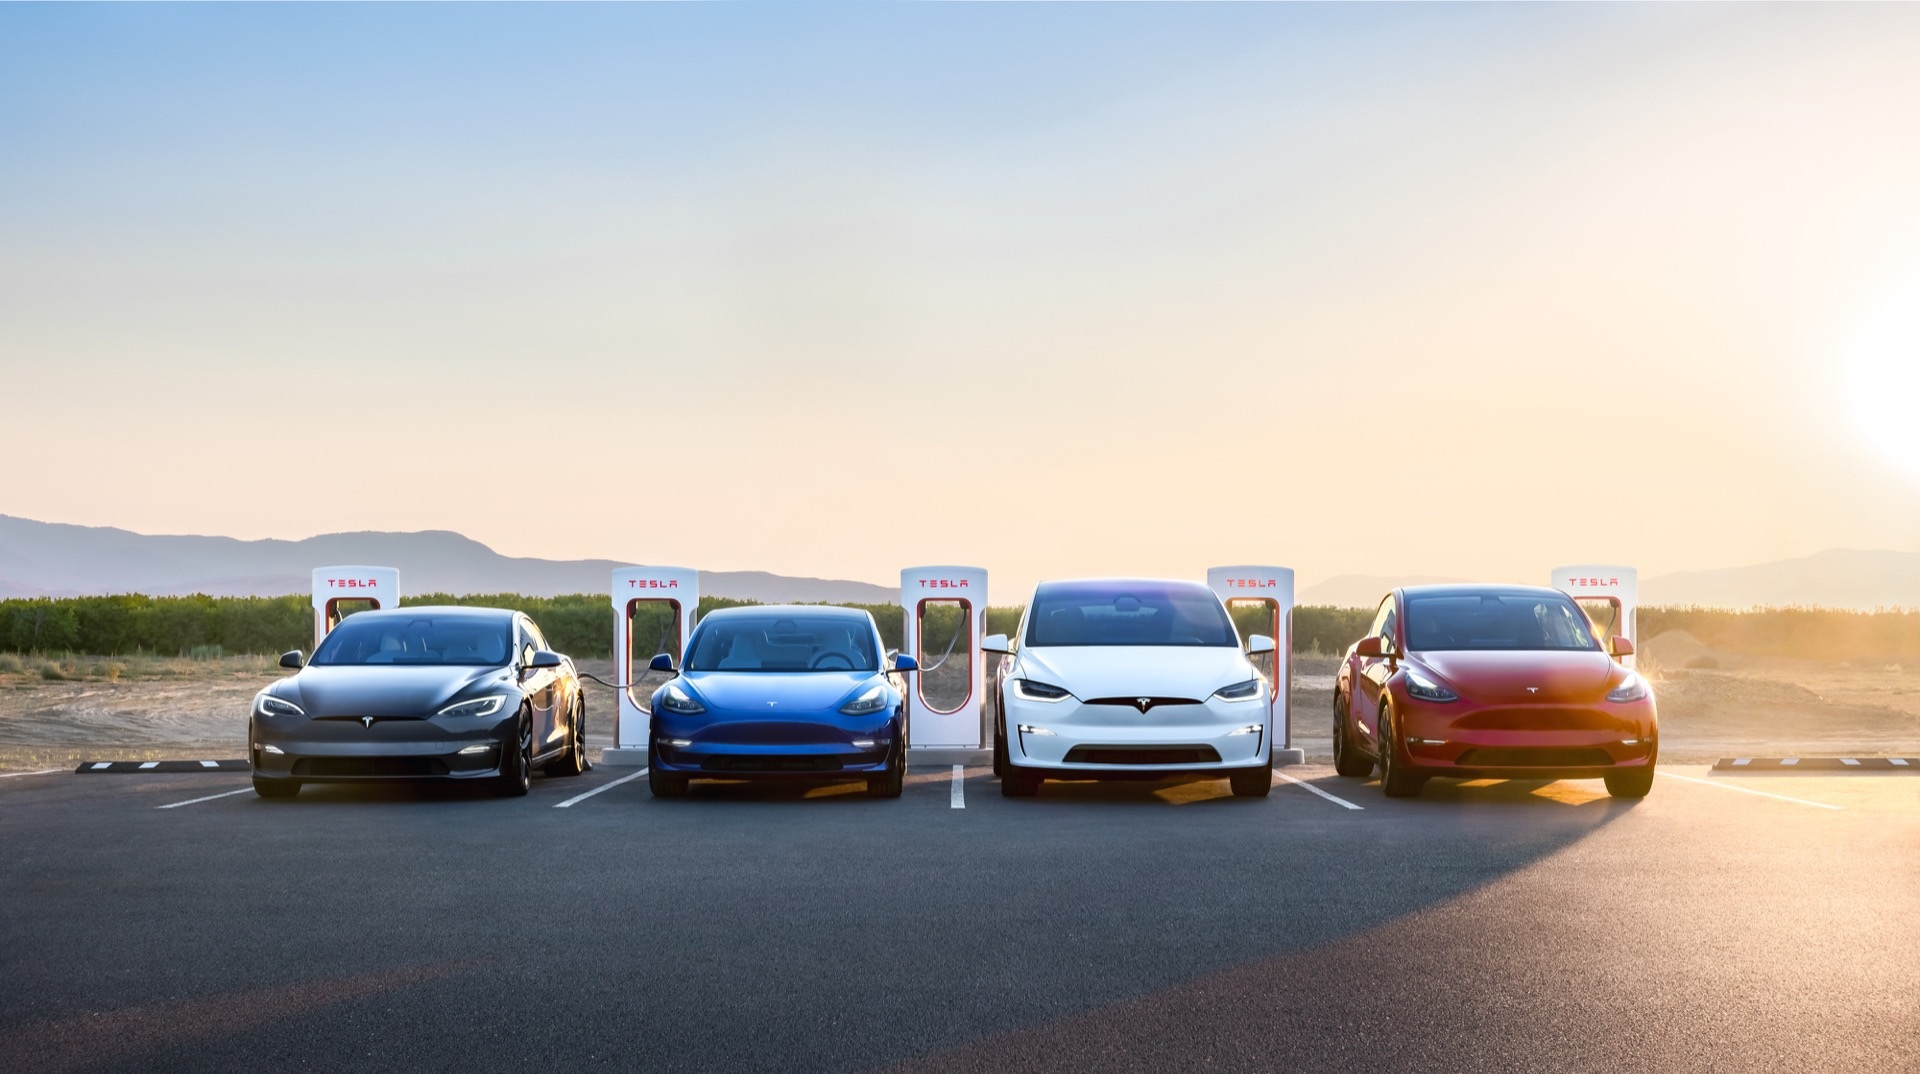 Tesla traci amerykański rynek samochodów elektrycznych - udział Muska spada do 65 proc.